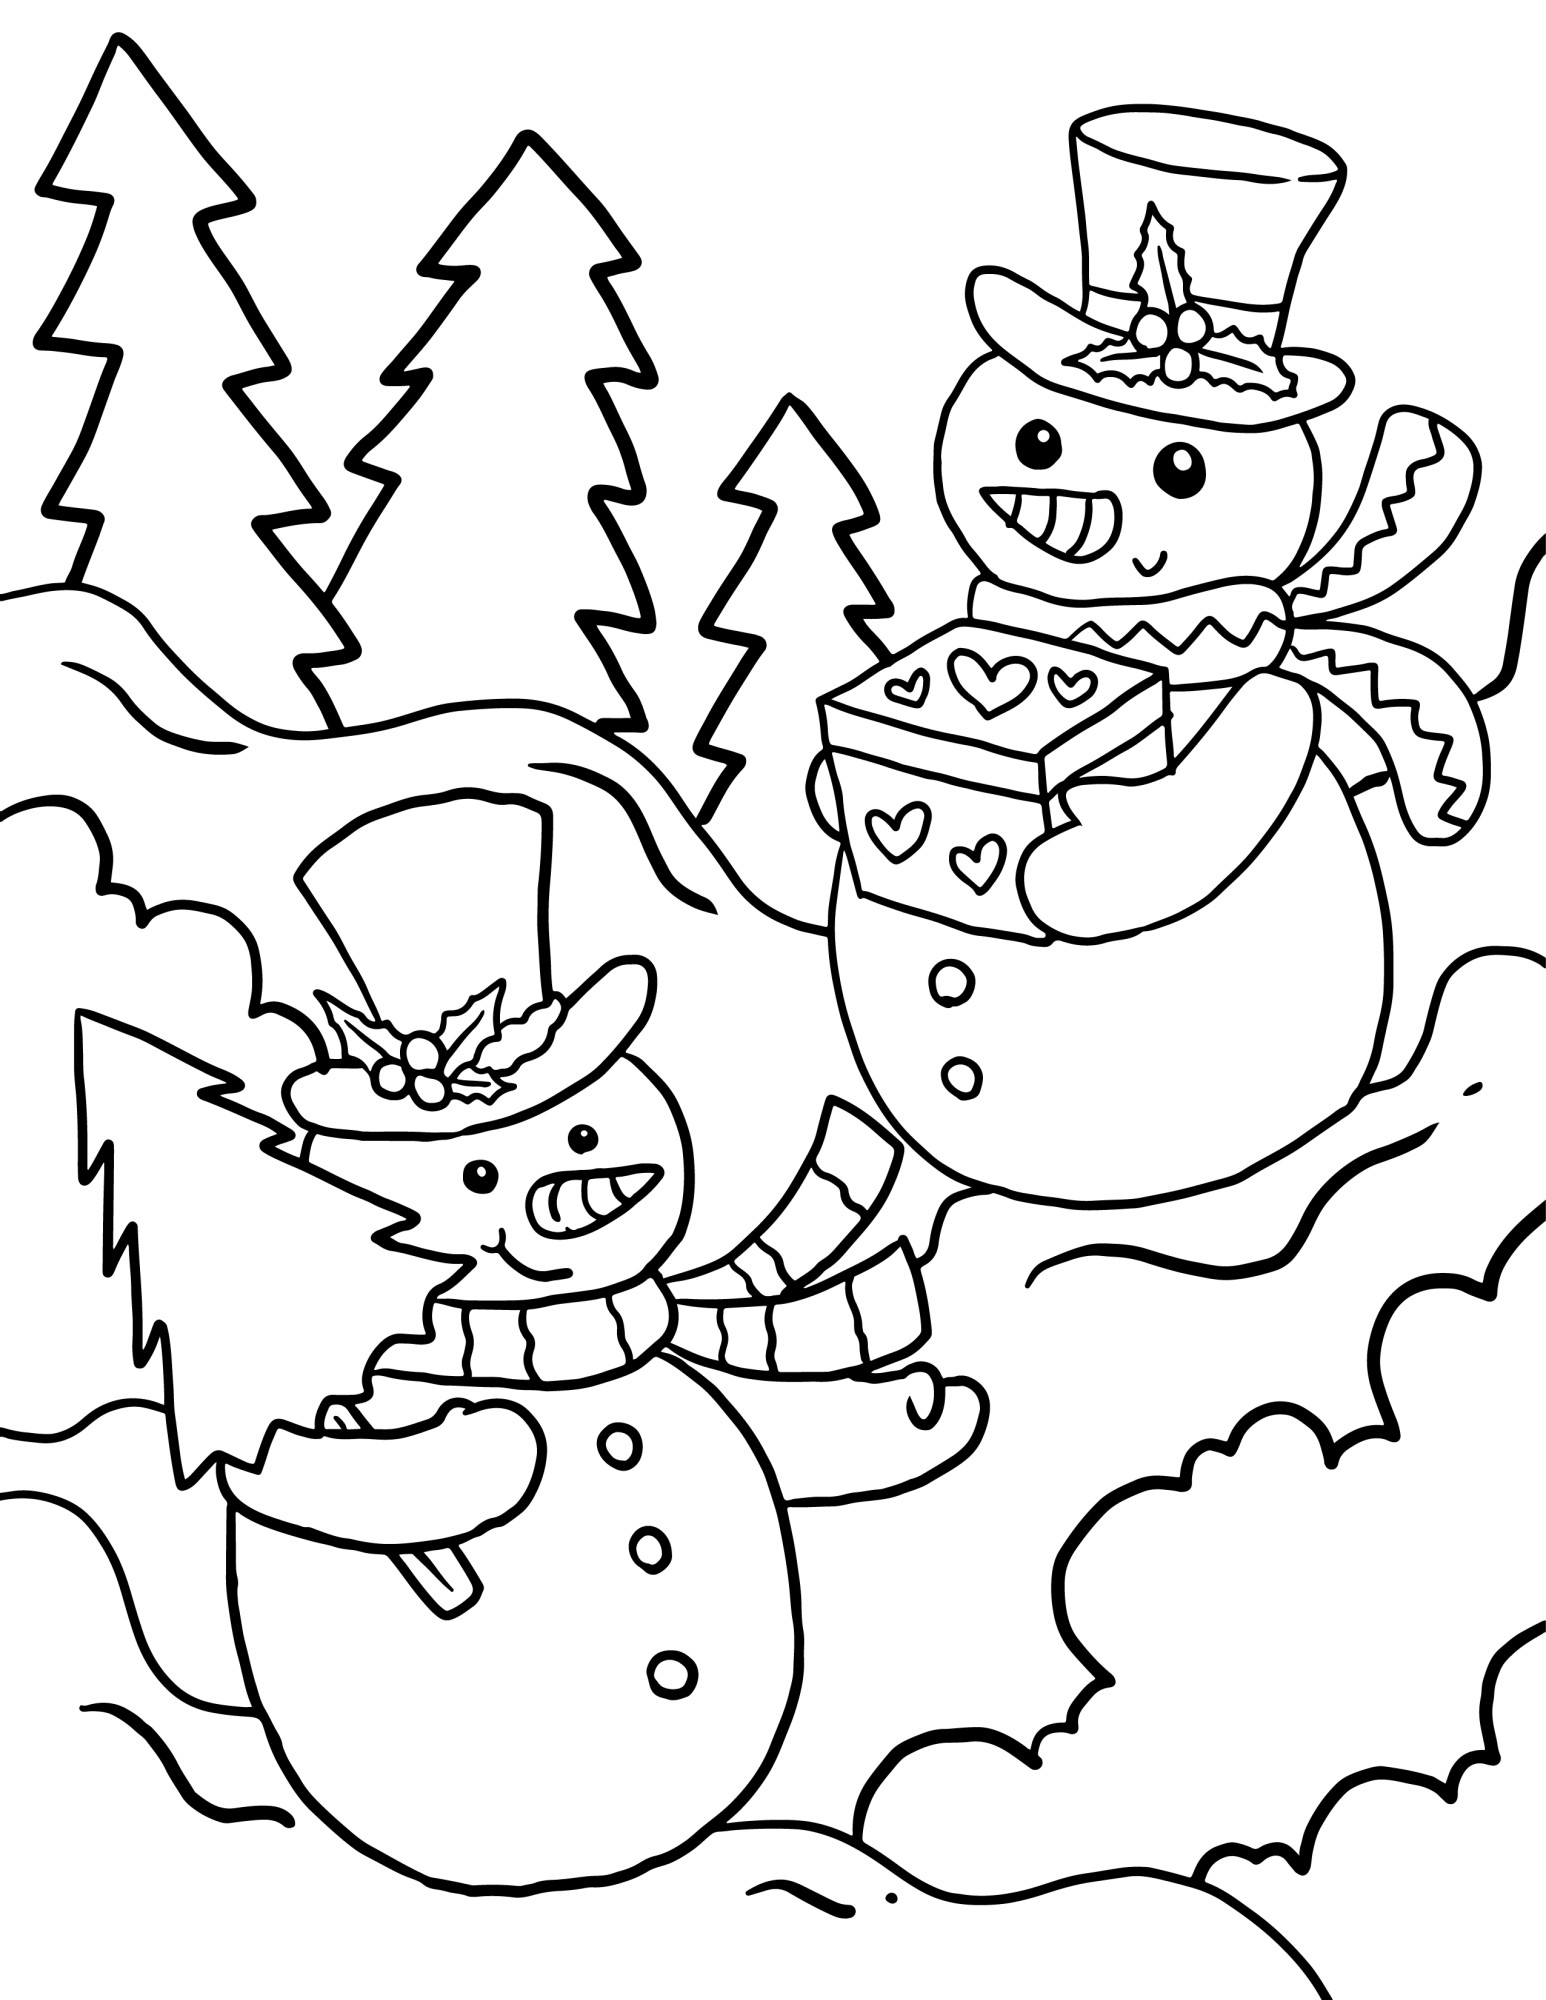 Раскраска для детей: два снеговика с подарком и ёлочкой в руках